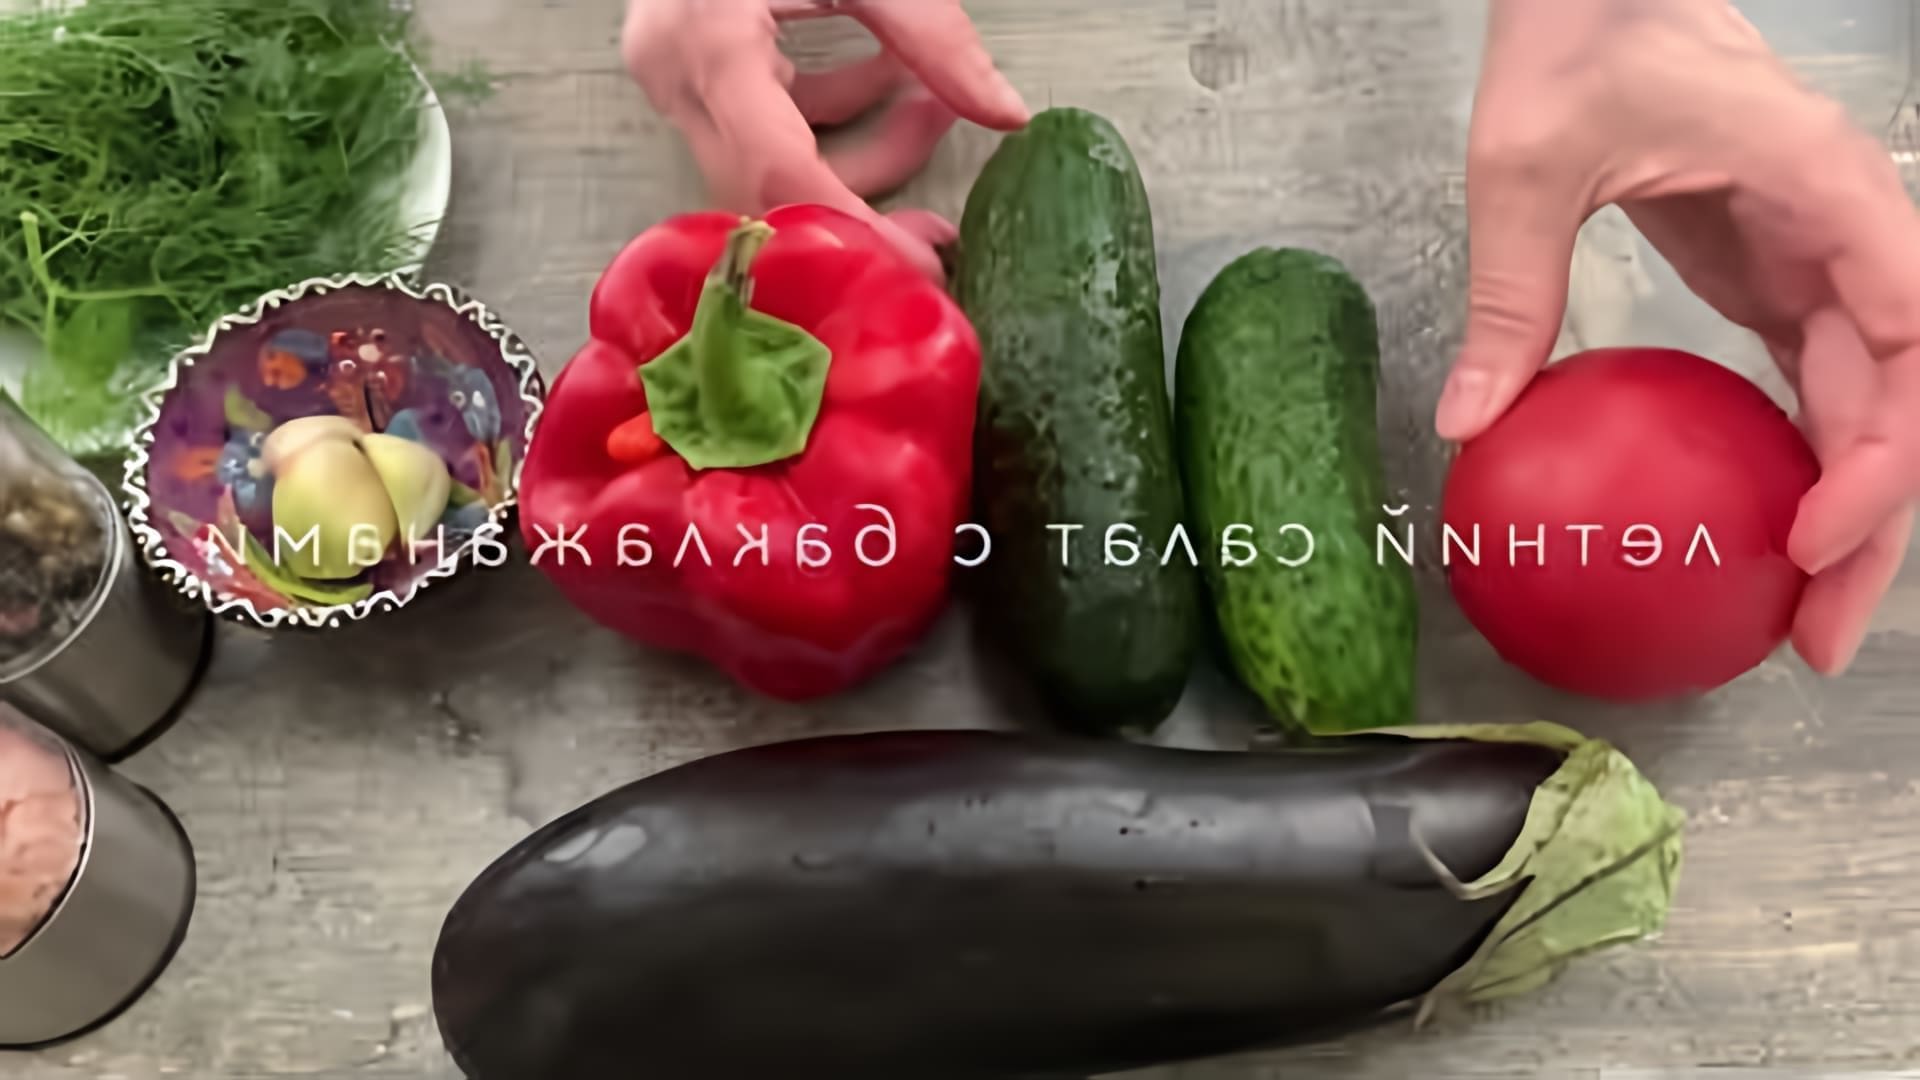 В этом видео-ролике вы увидите необычный рецепт салата с баклажанами, который готовится без использования майонеза